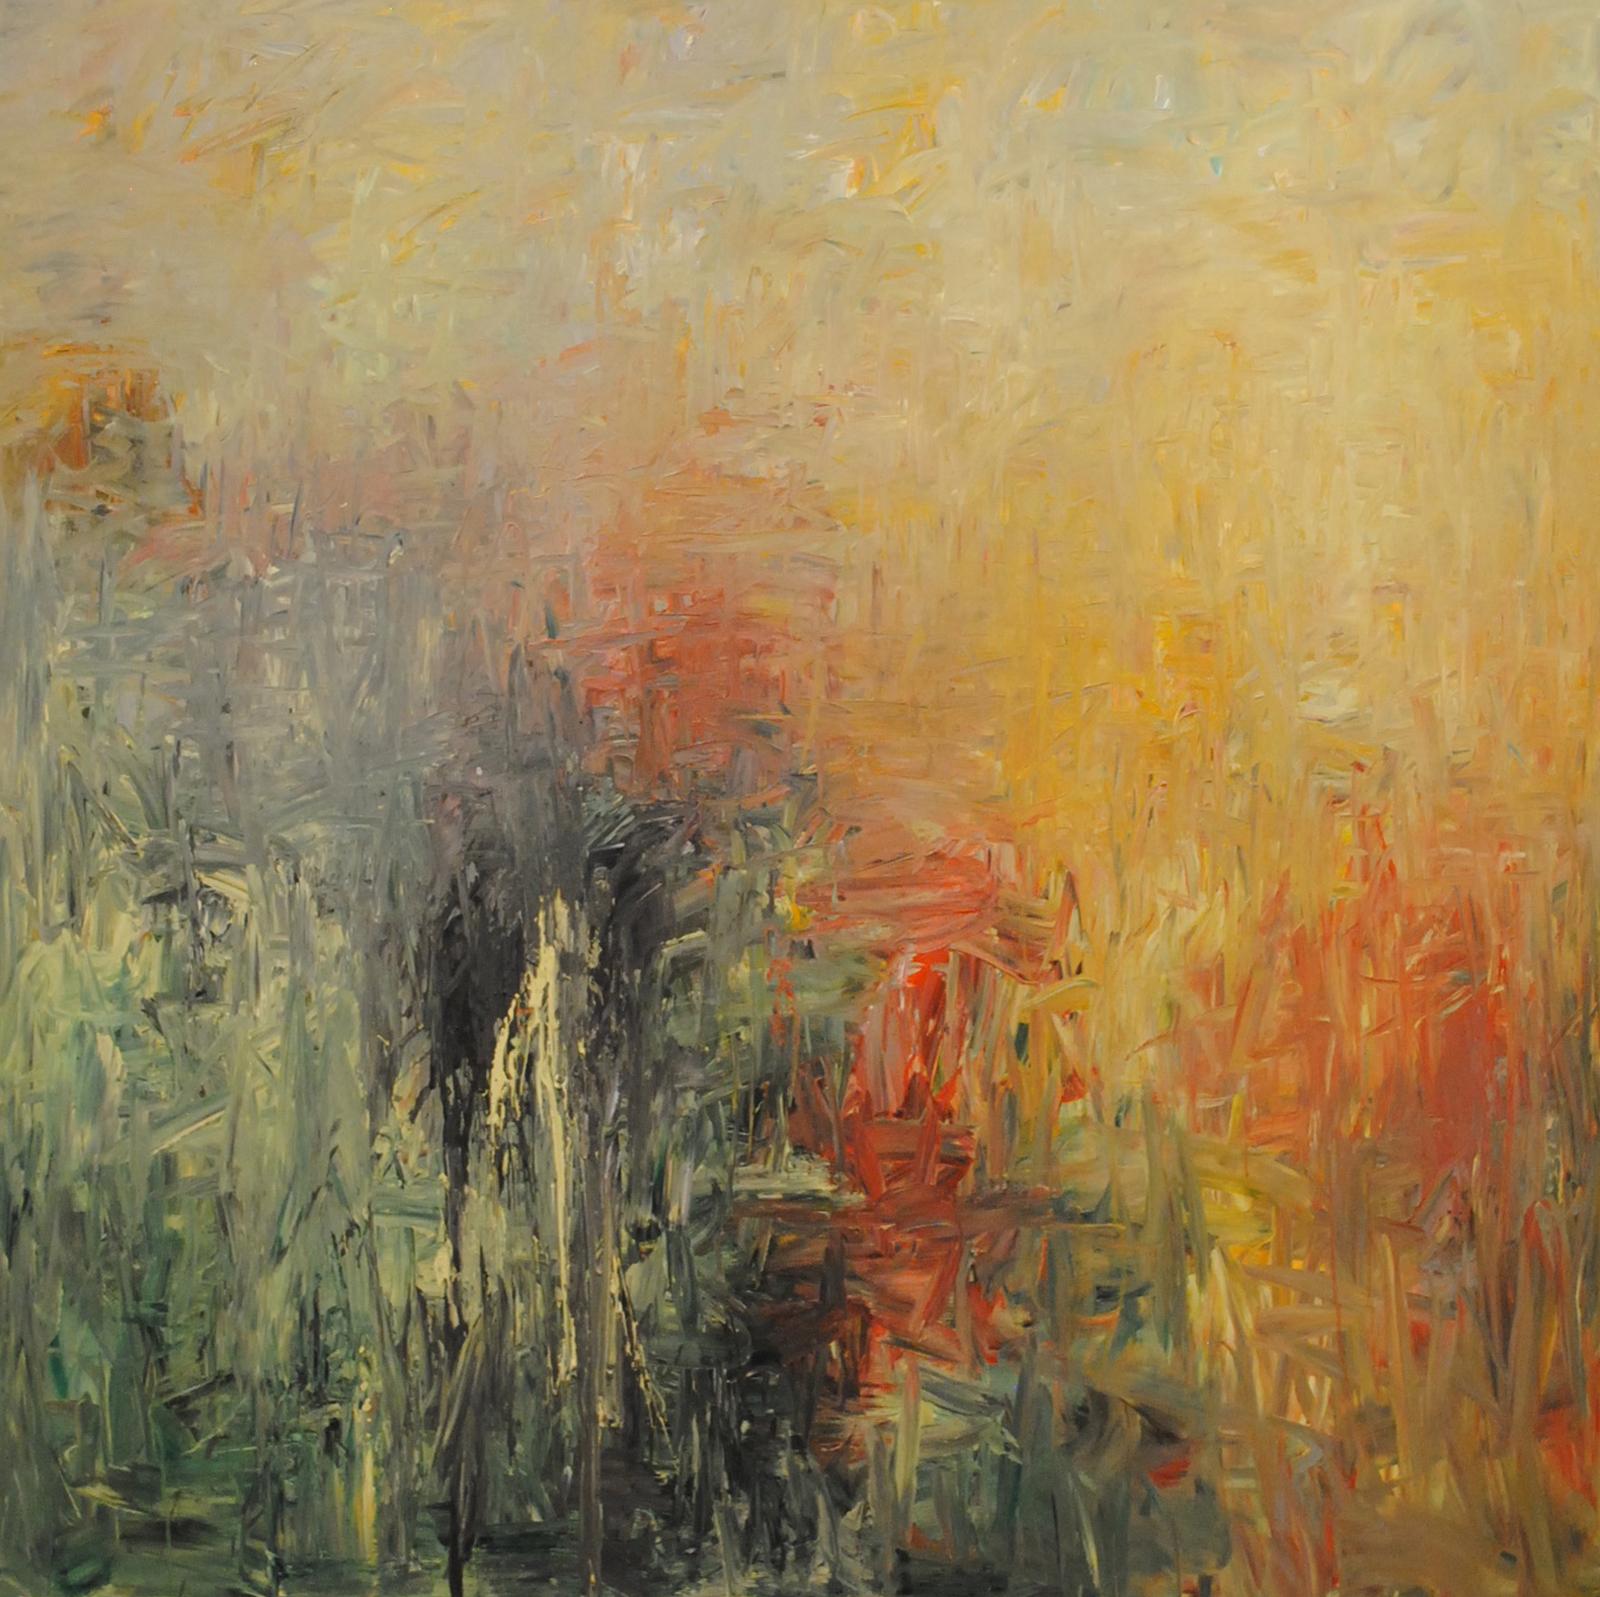 Md Tokon - Rain in the Autumn, Painting 2015